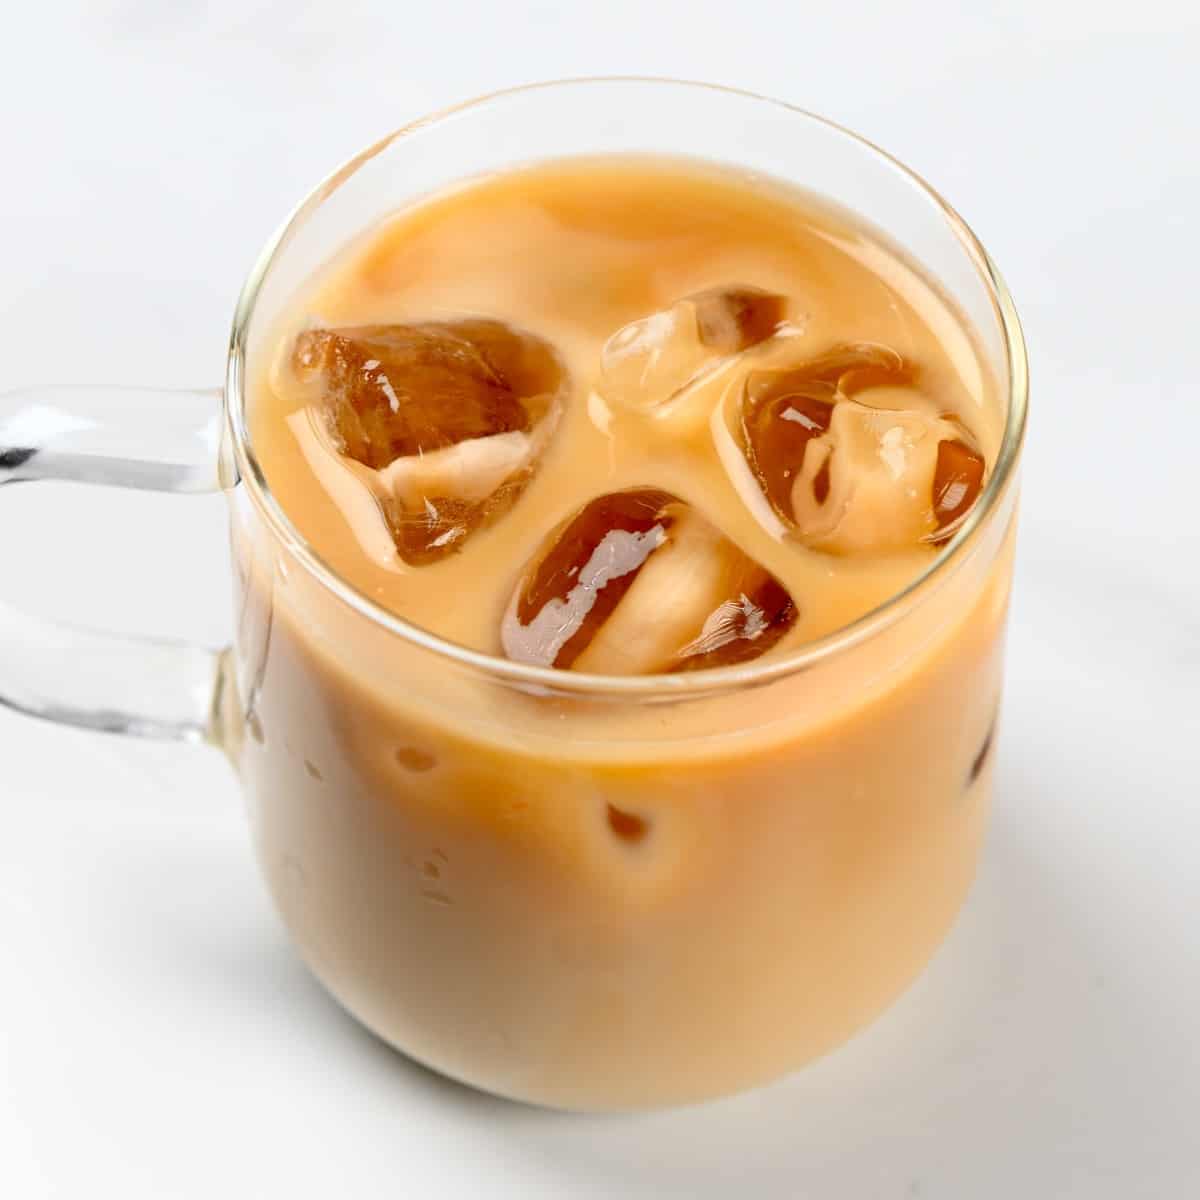 Resep Es Kopi Latte My Cafe: Nikmat dan Menyegarkan